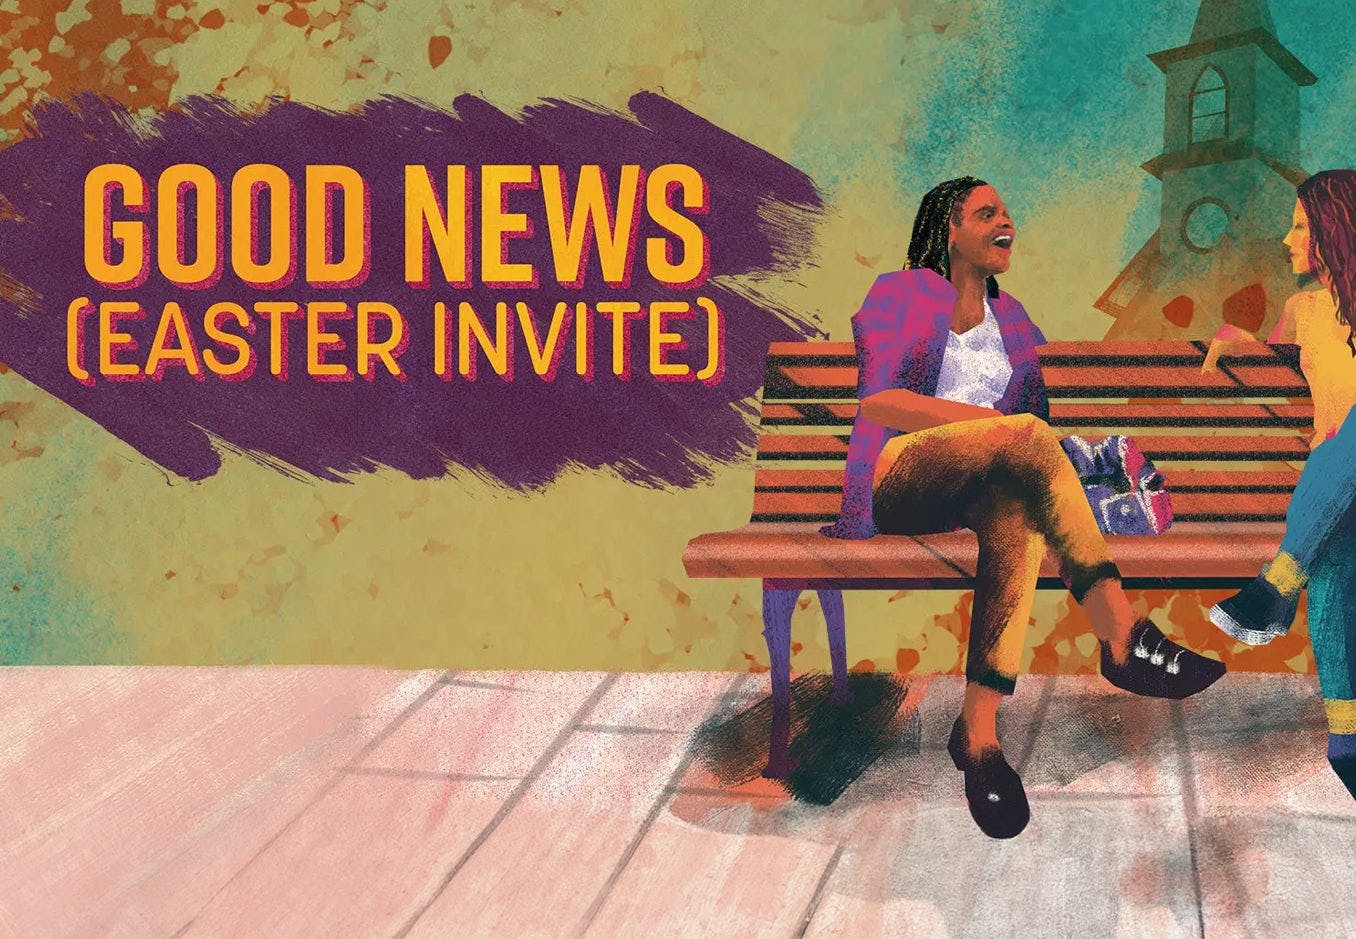 Good News Easter Invite